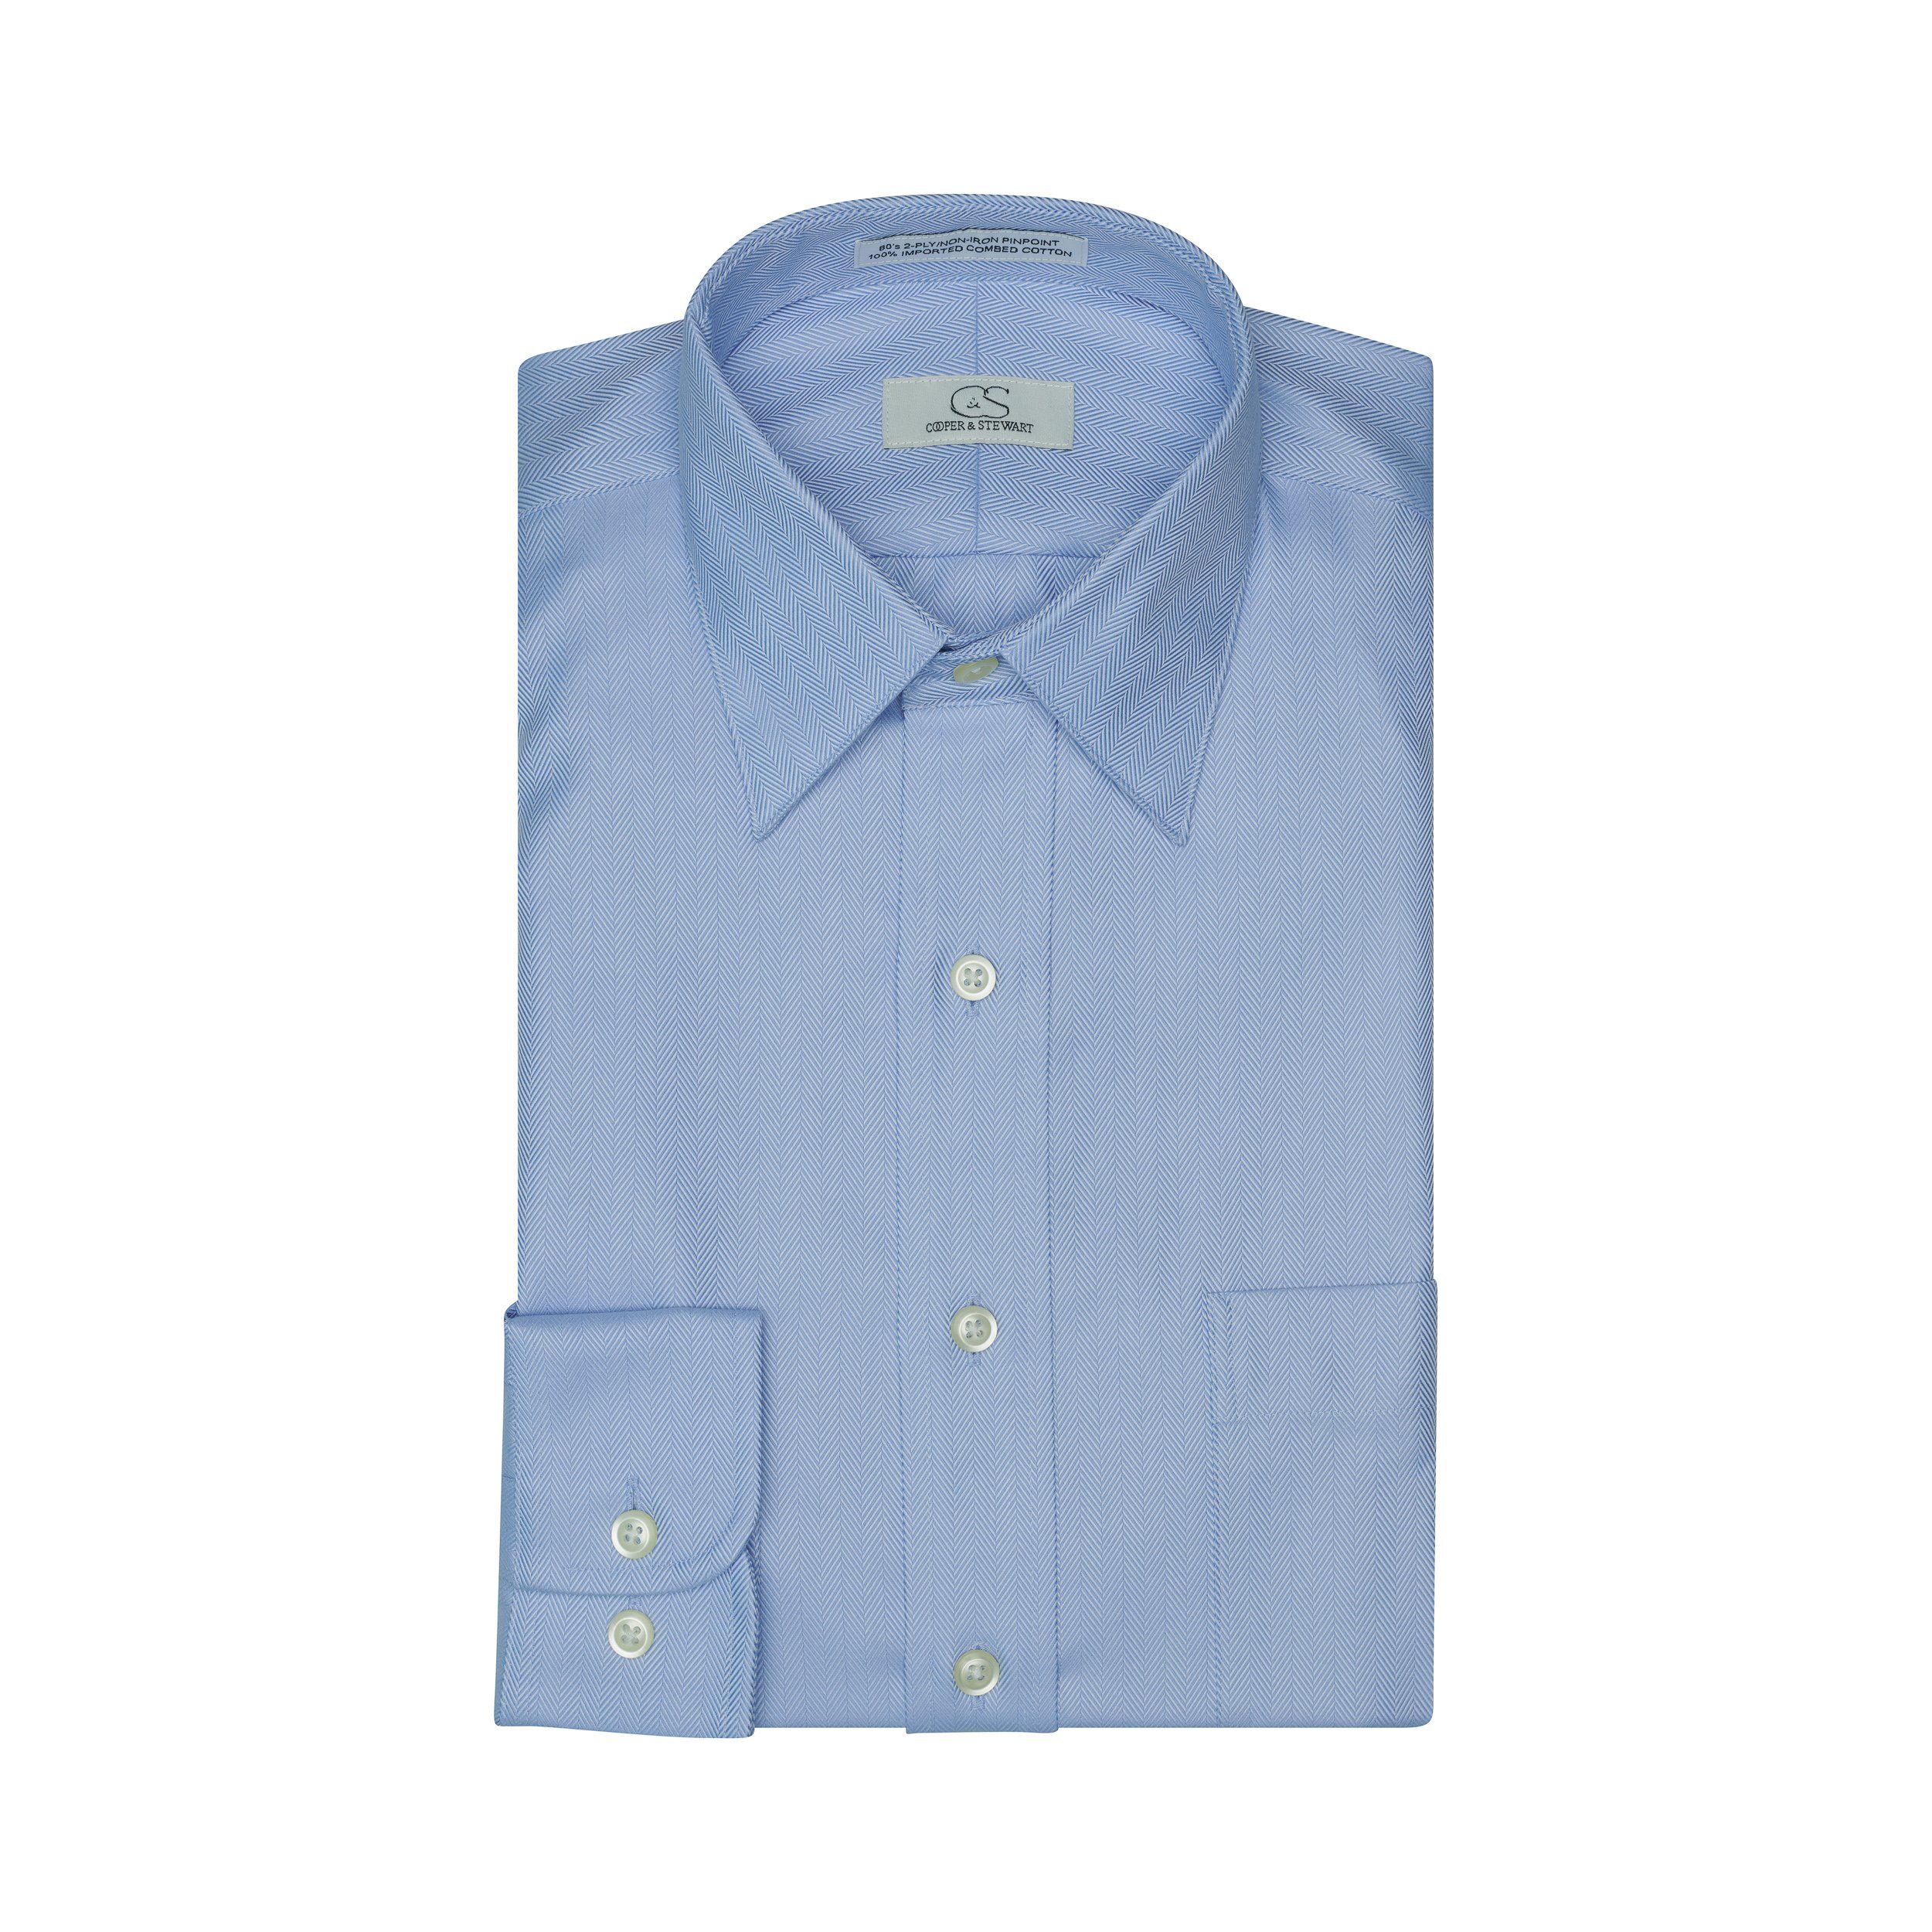 009 - Blue Herringbone SC Dress Shirt Cooper and Stewart 